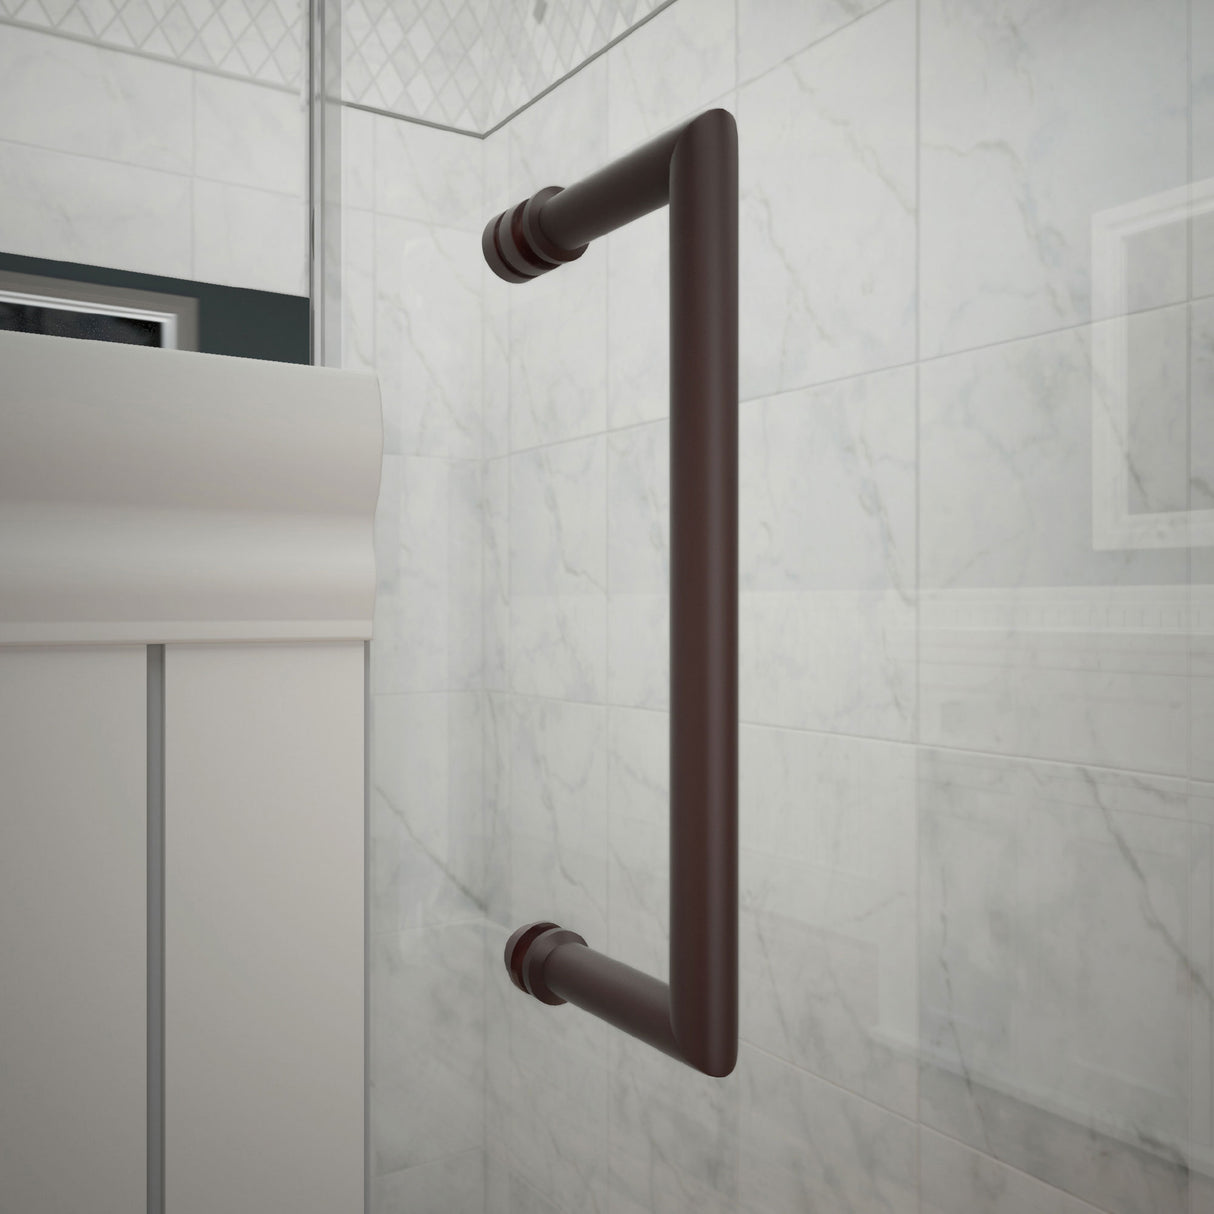 DreamLine Unidoor 60-61 in. W x 72 in. H Frameless Hinged Shower Door with Shelves in Oil Rubbed Bronze